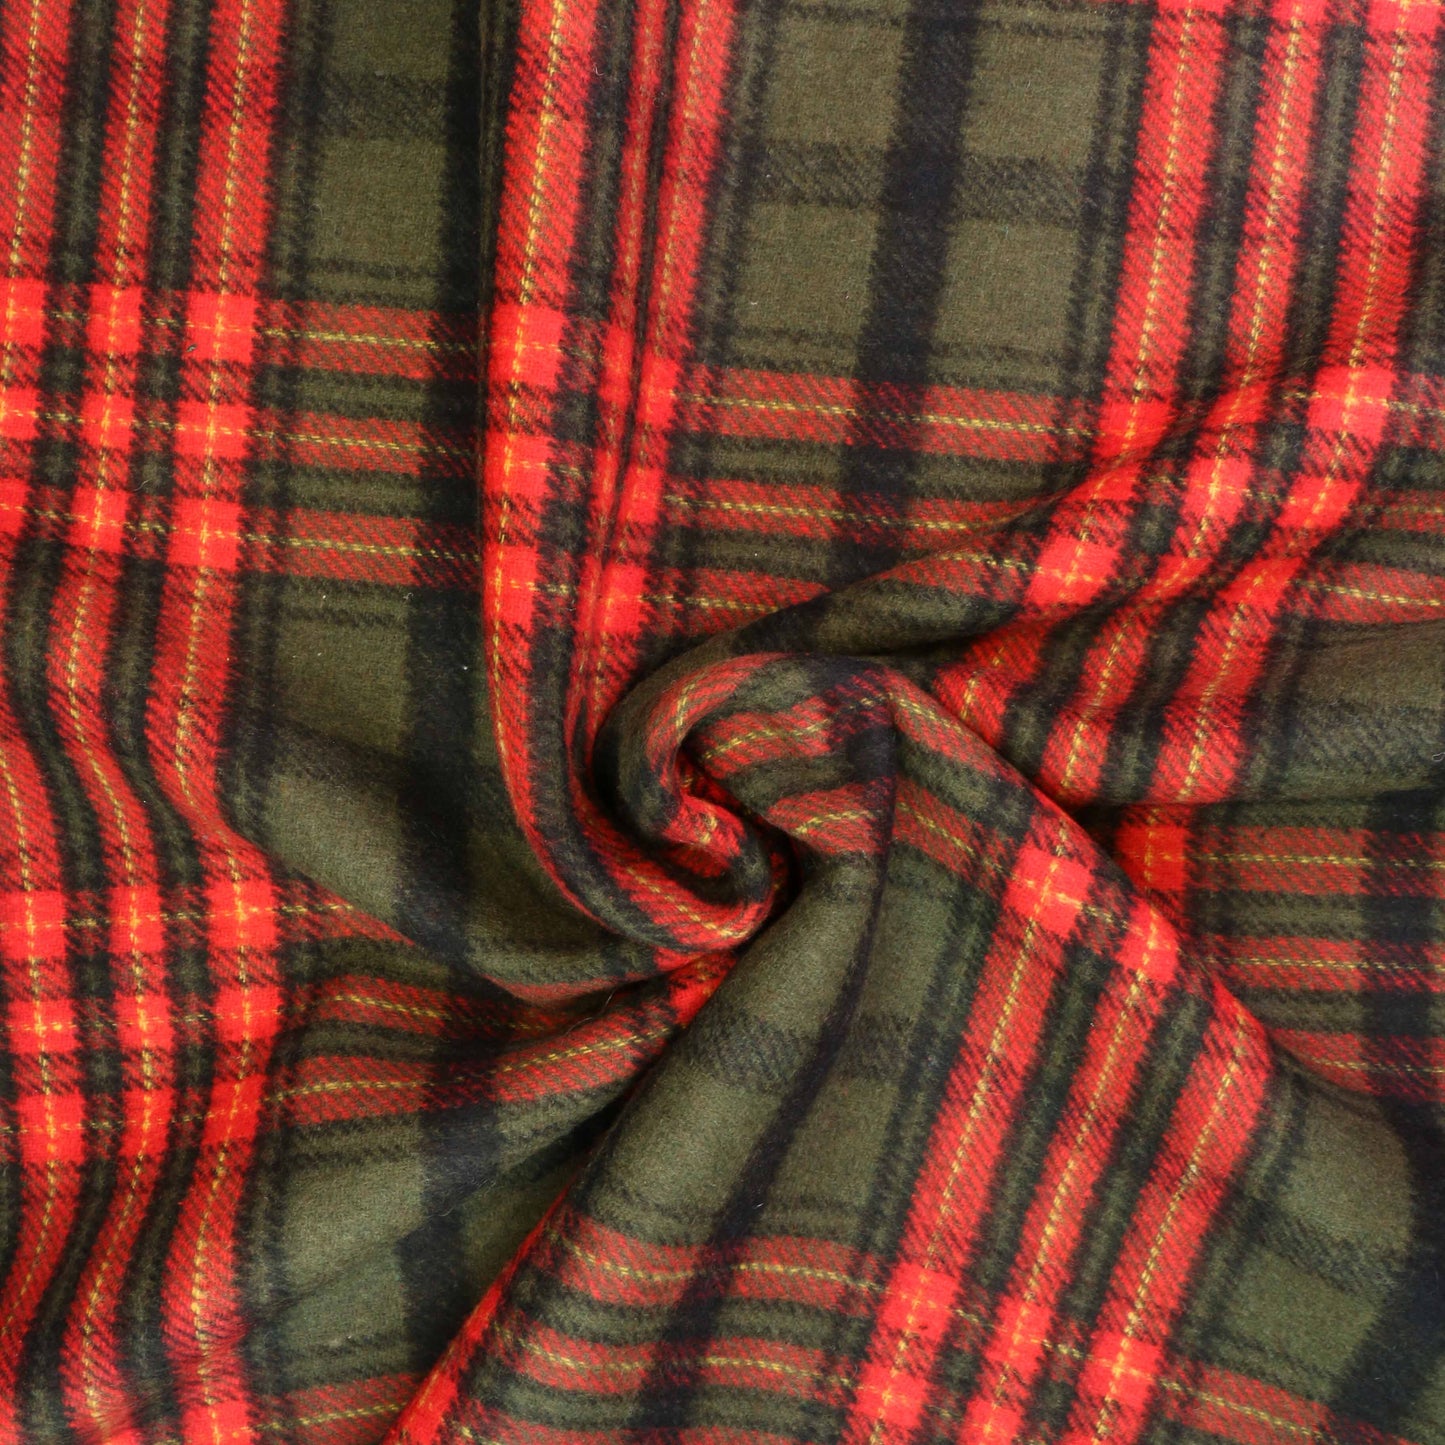 Reversible Wool Coating - Green, Beige, Brown